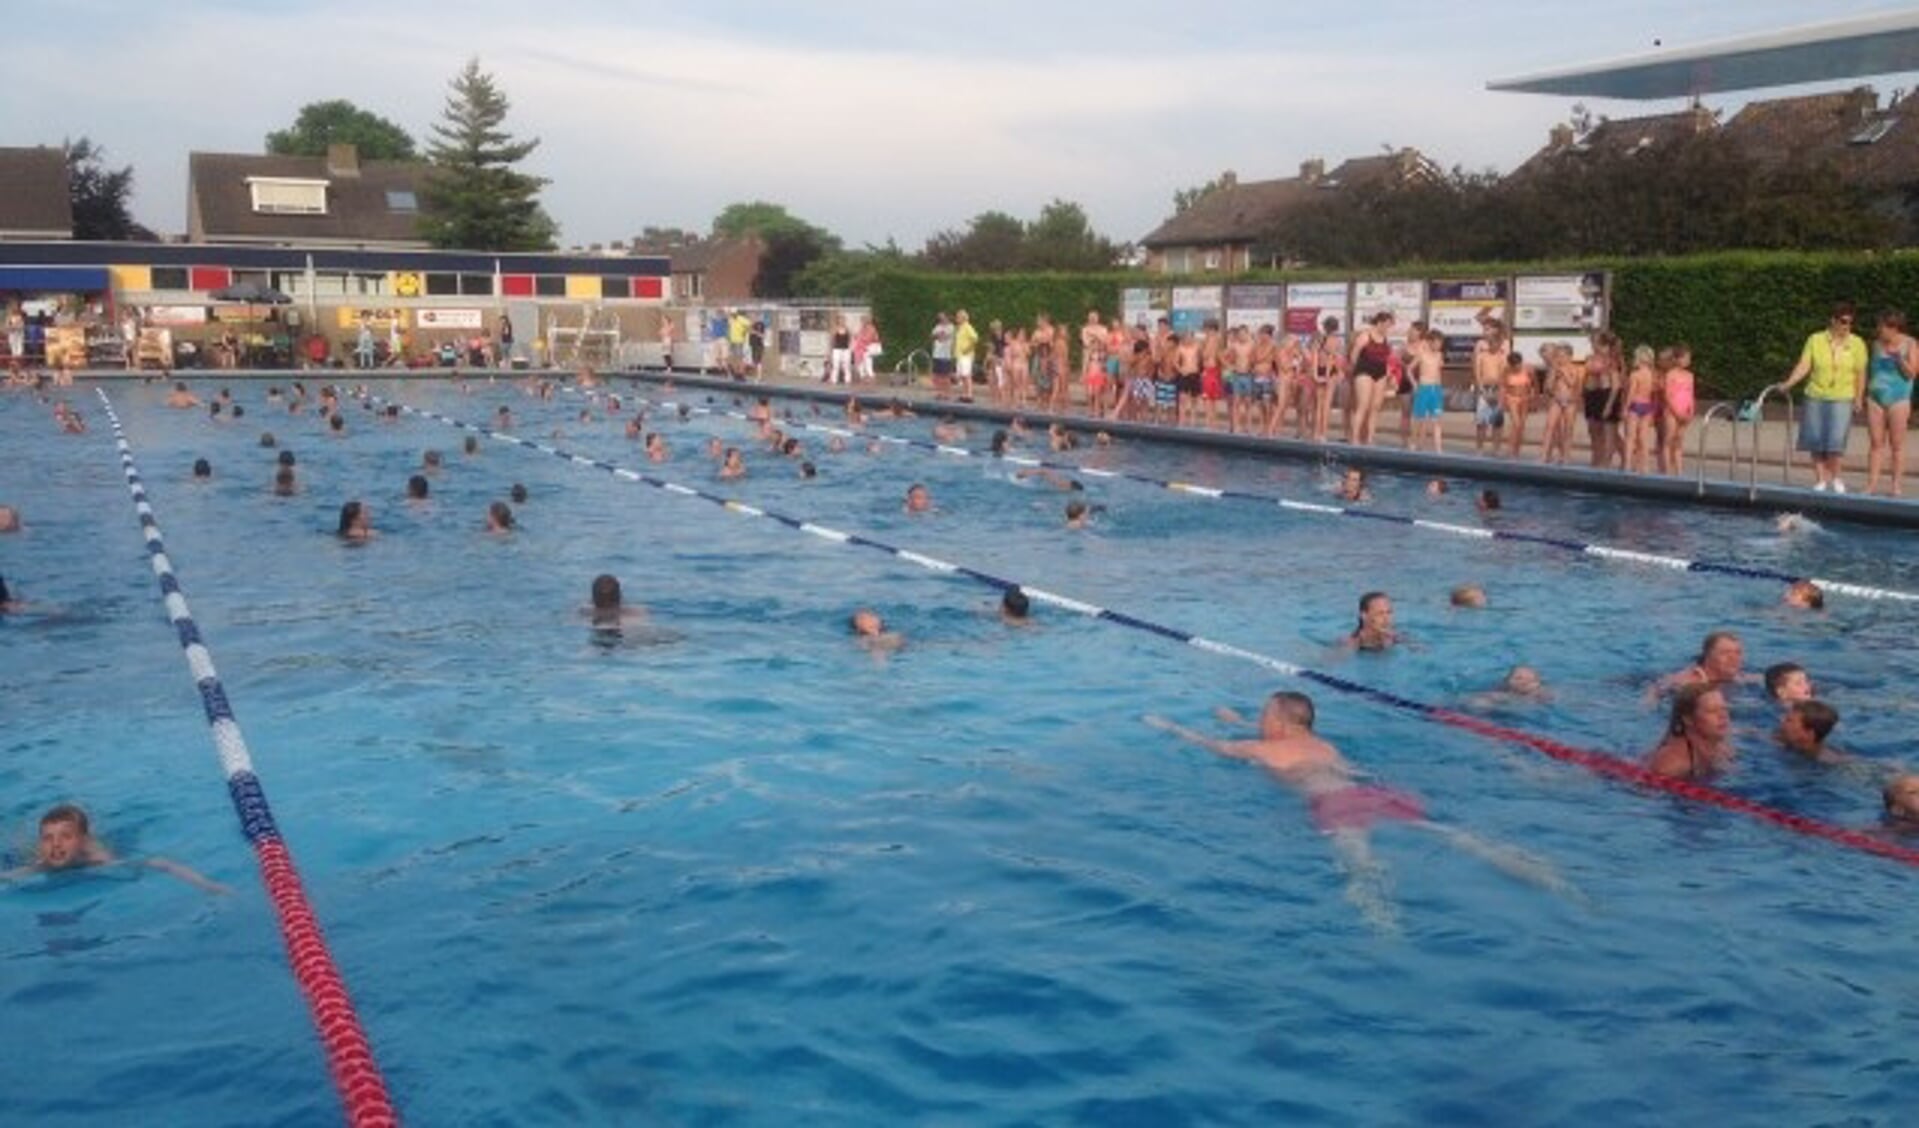 De jaarlijkse Zwem4daagse in het Knopenbad voor jong en oud. Niet alleen sportief, maar ook heel gezellig! (Foto: Knopenbad)